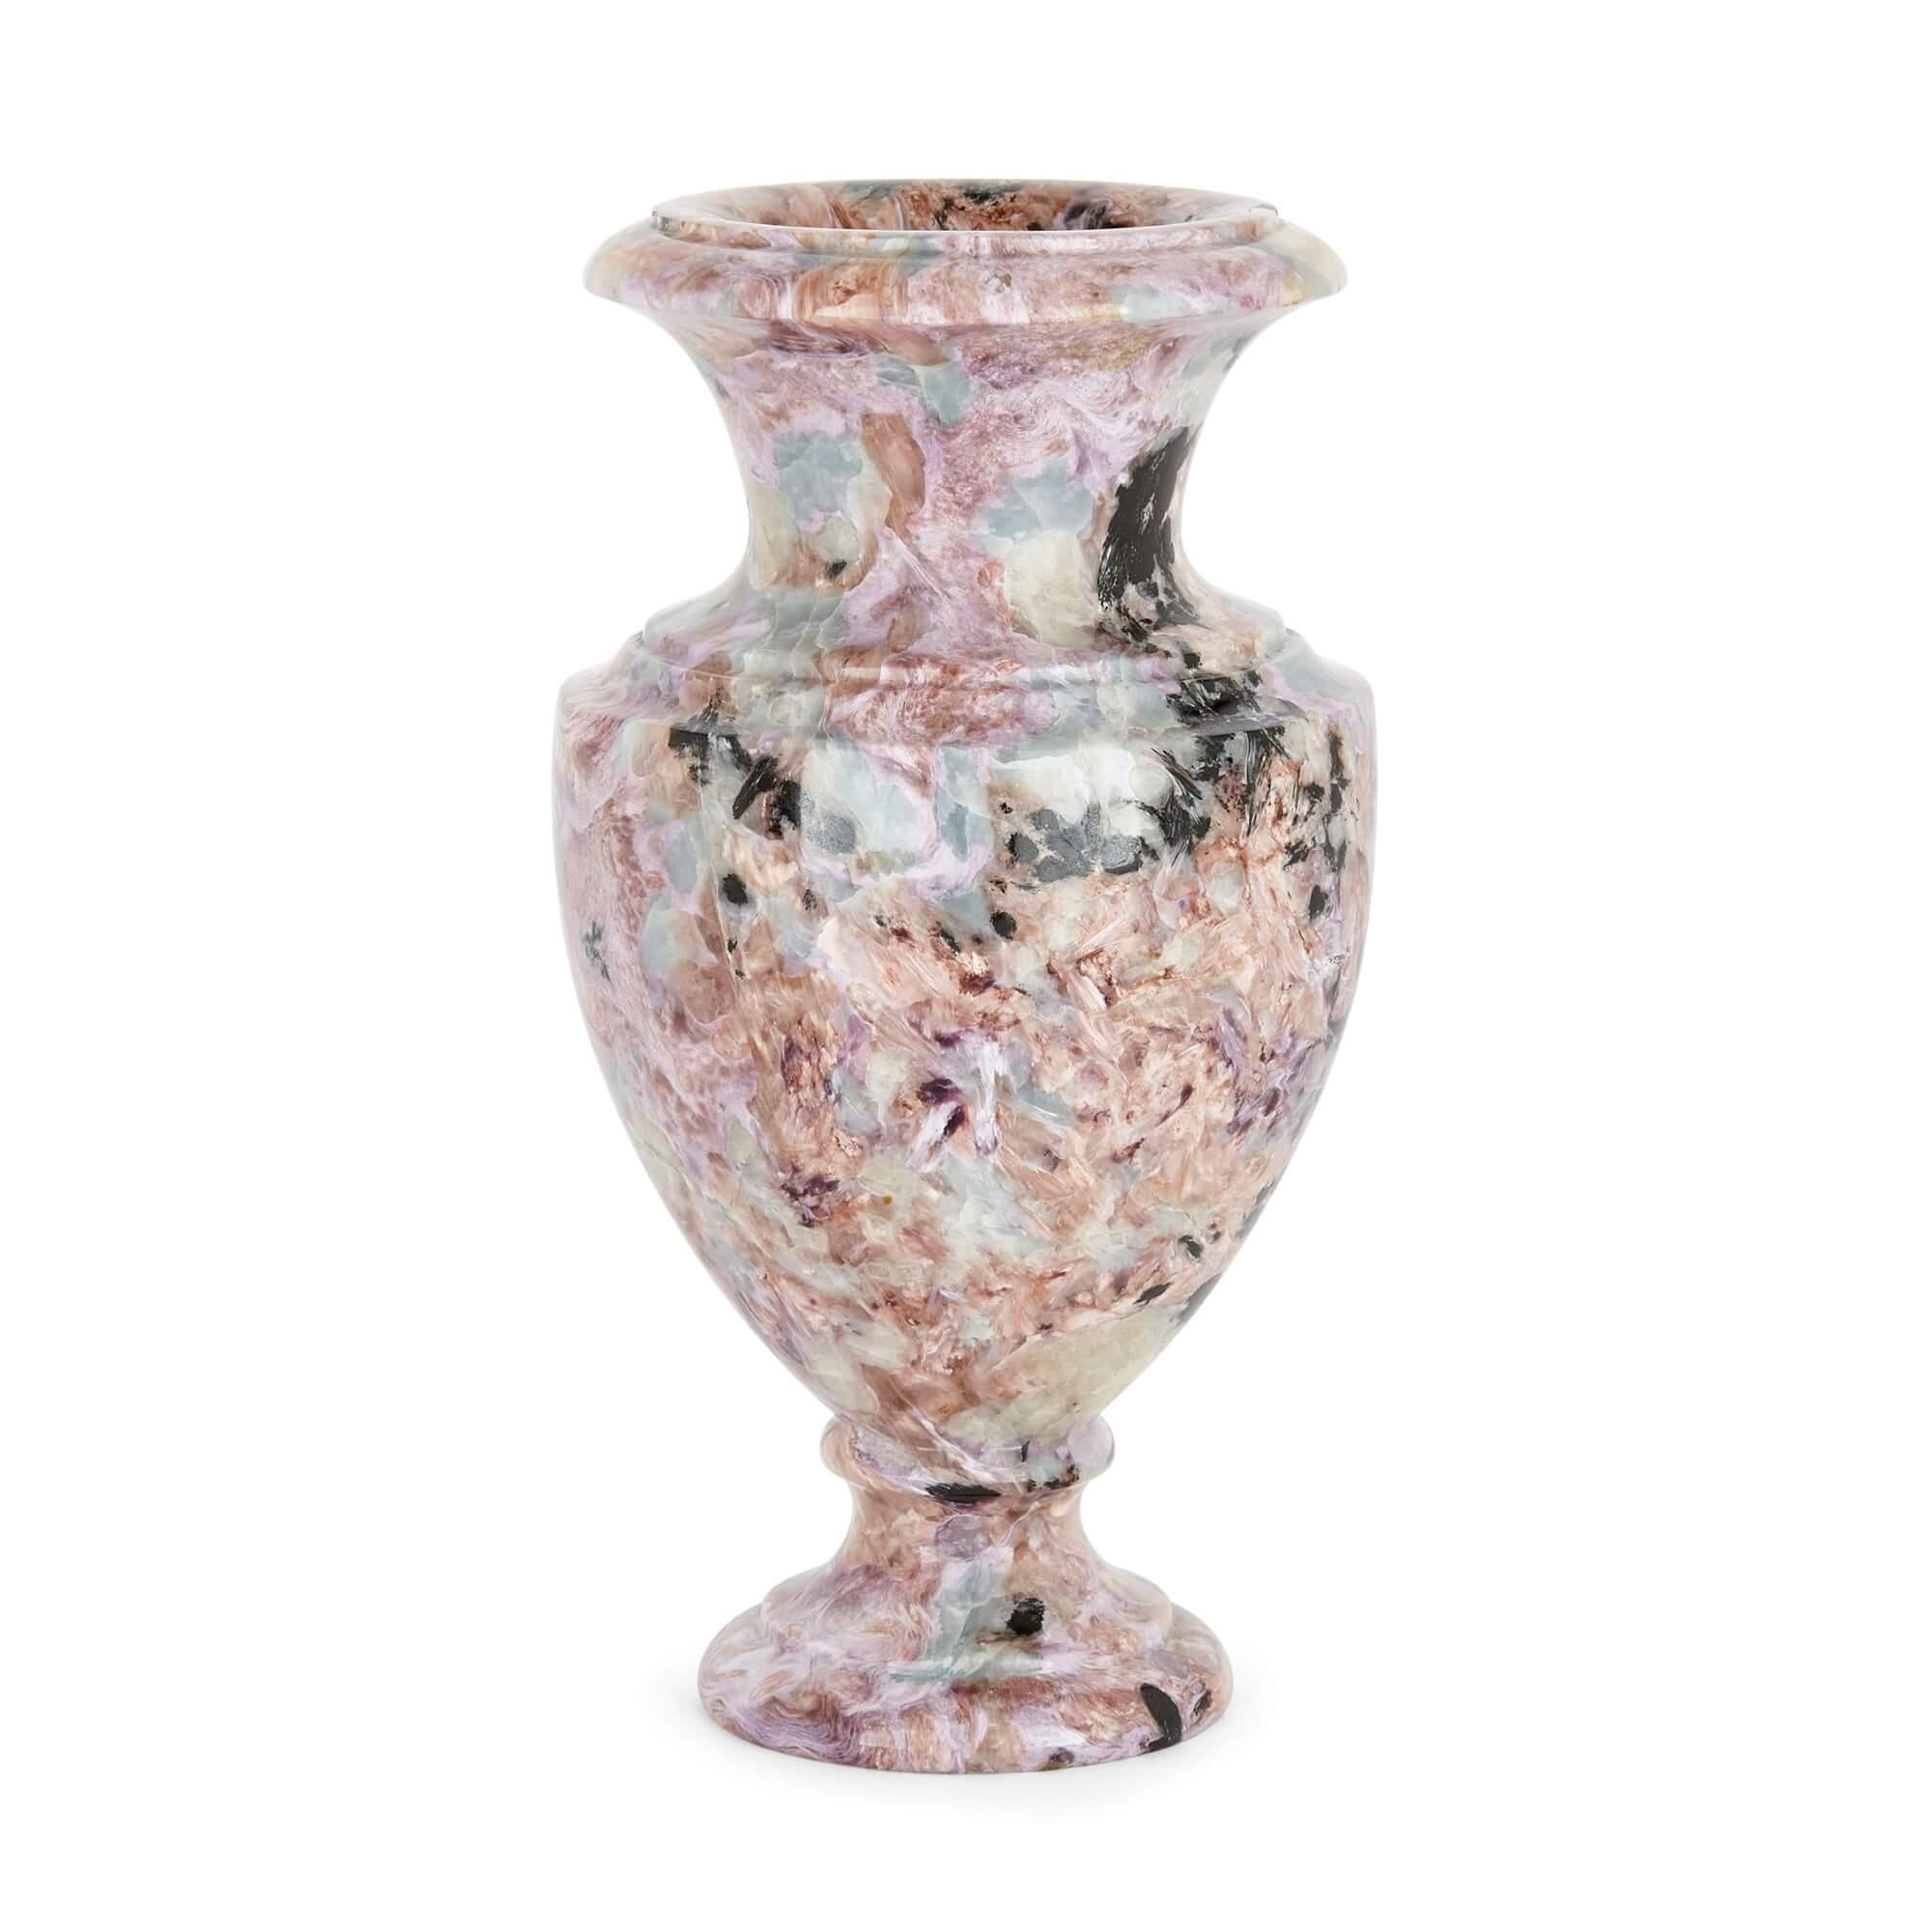 Rosa und grün gefärbter Onyx Russische Vase in Urnenform
Russisch, 20. Jahrhundert
Maße: Höhe 24cm, Breite 12cm, Tiefe 11,5cm

Bei diesem exzellenten Mineralienstück von leicht ovaler Form handelt es sich um eine urnenförmige Vase aus russischem